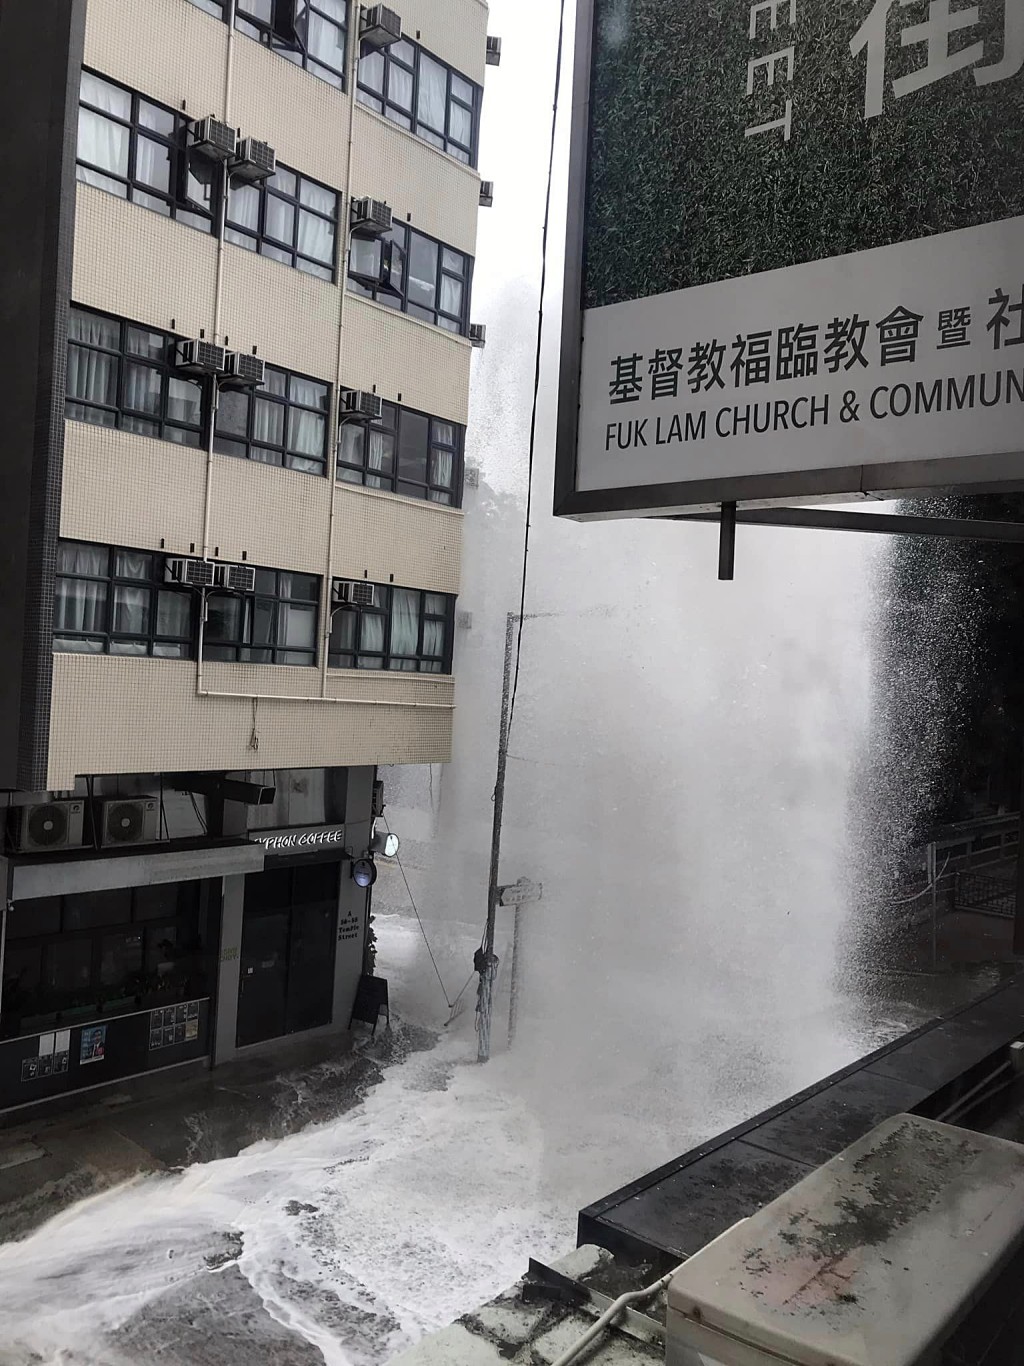 爆水管处形成大喷泉。fb：香港交通及突发事故报料区